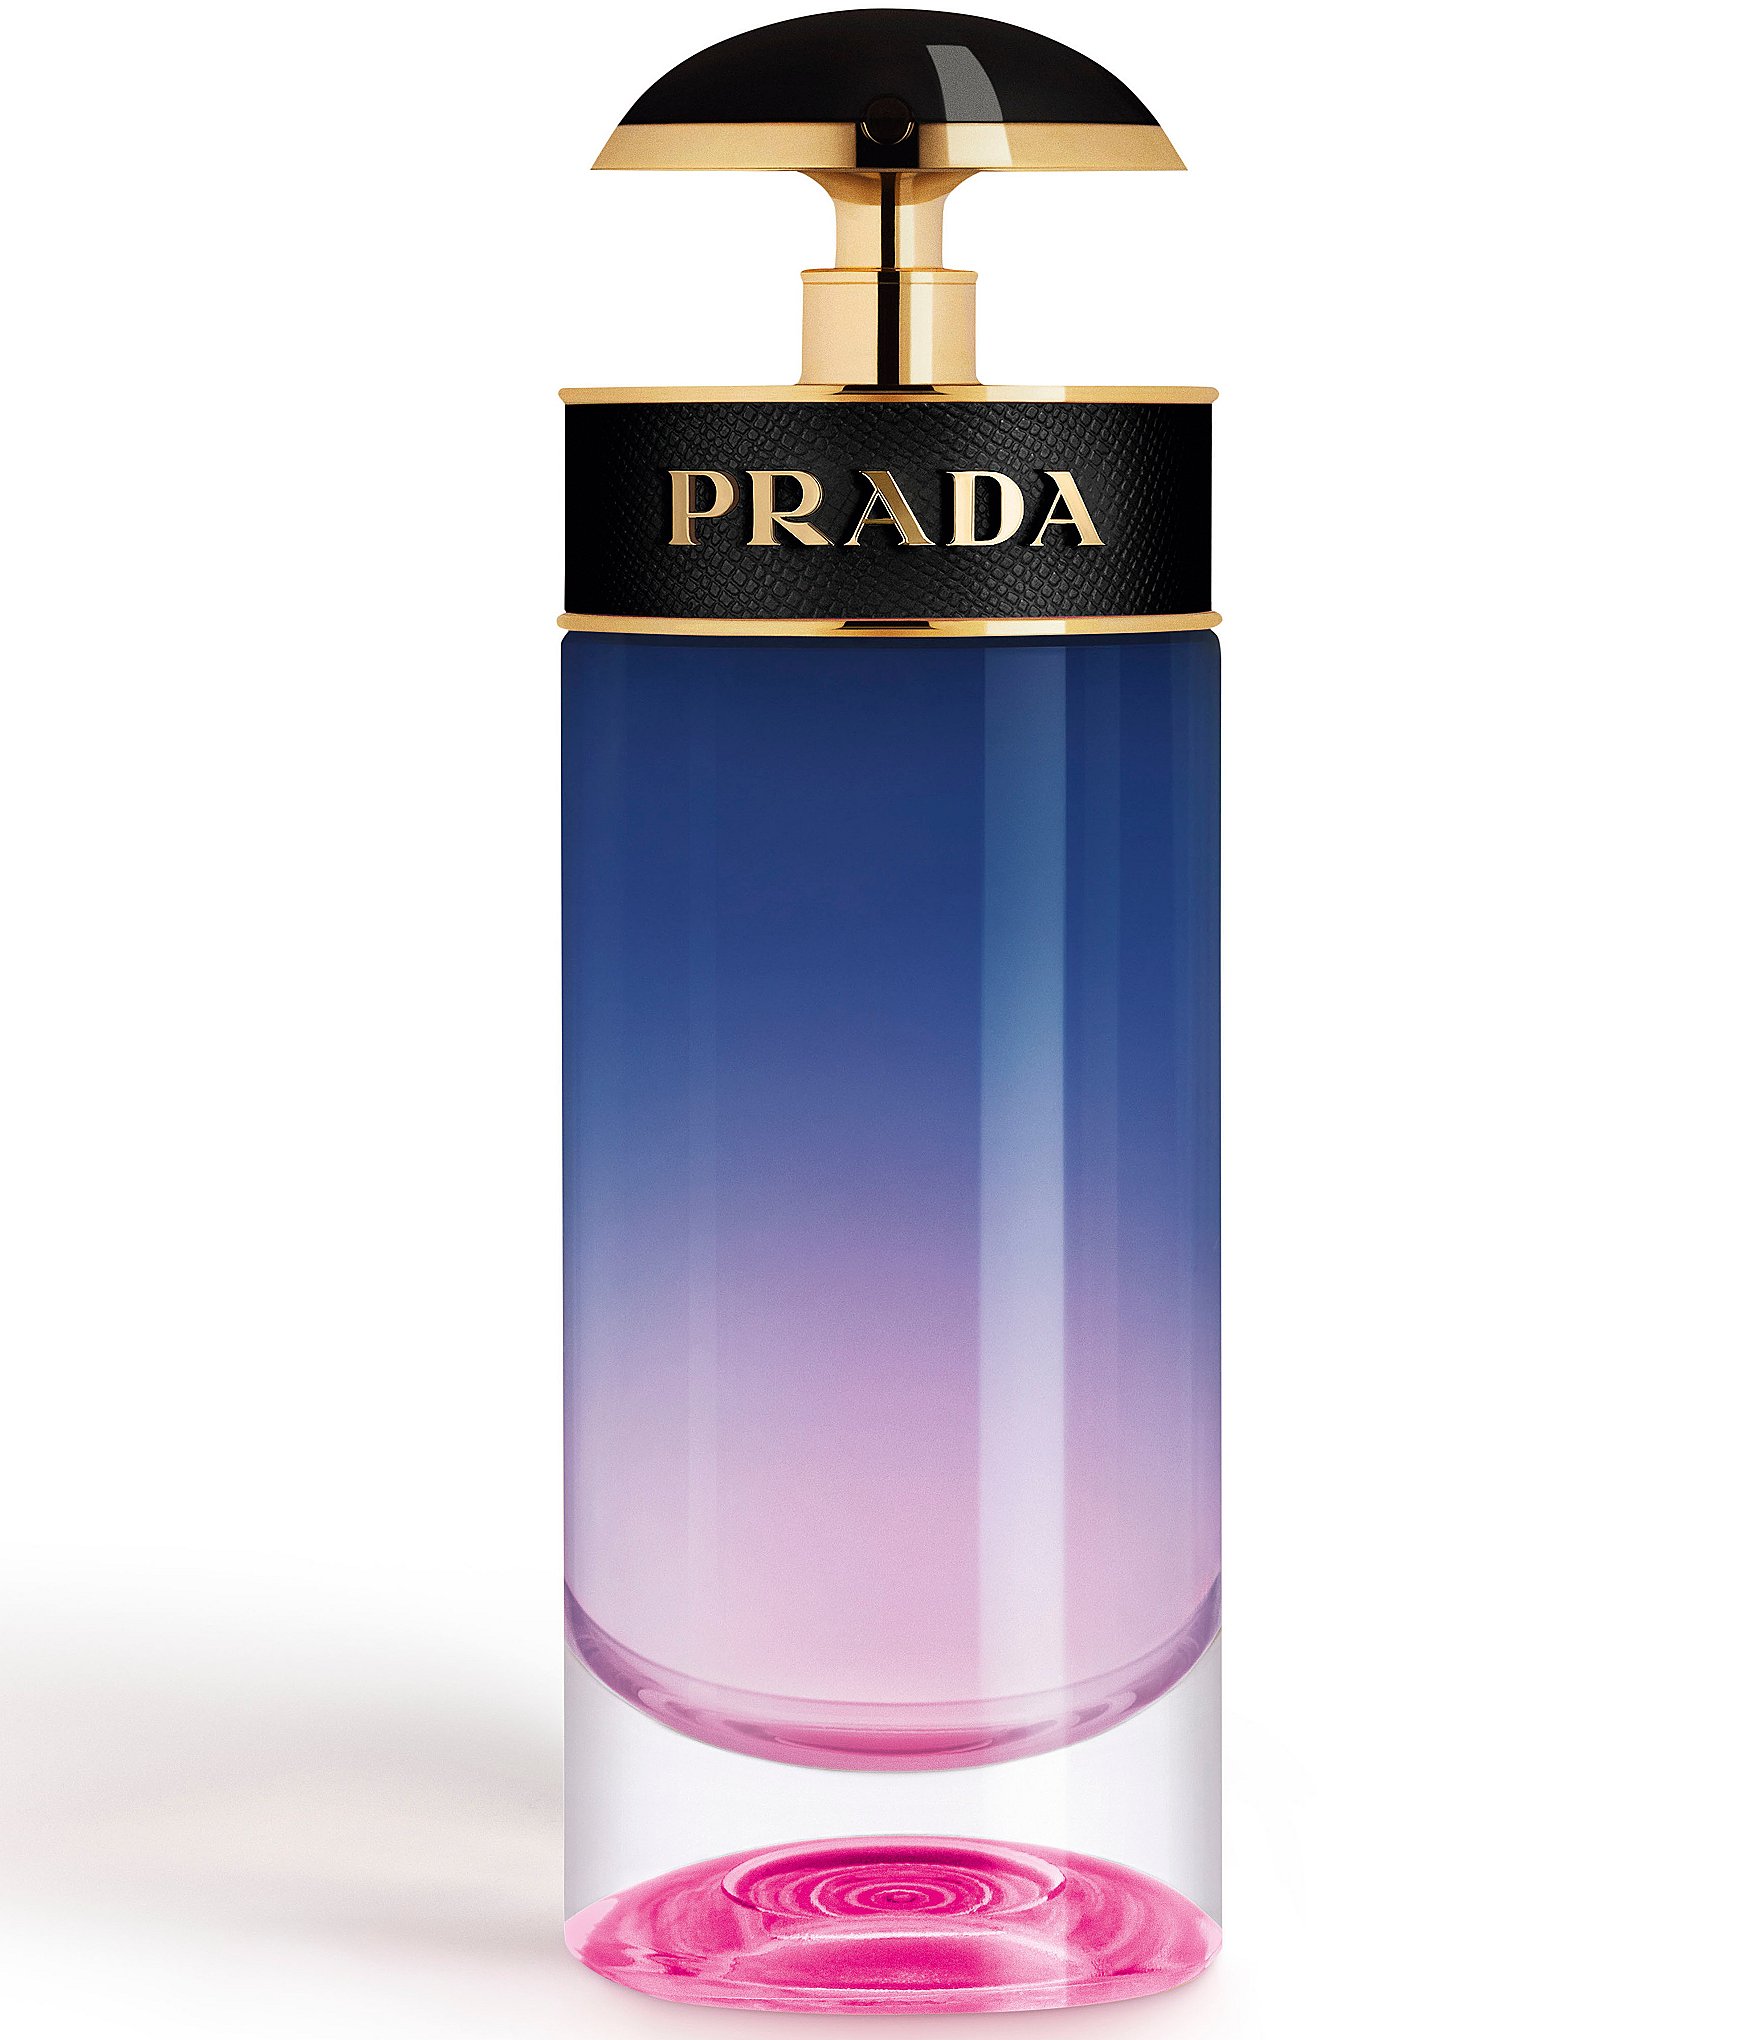 prada night perfume